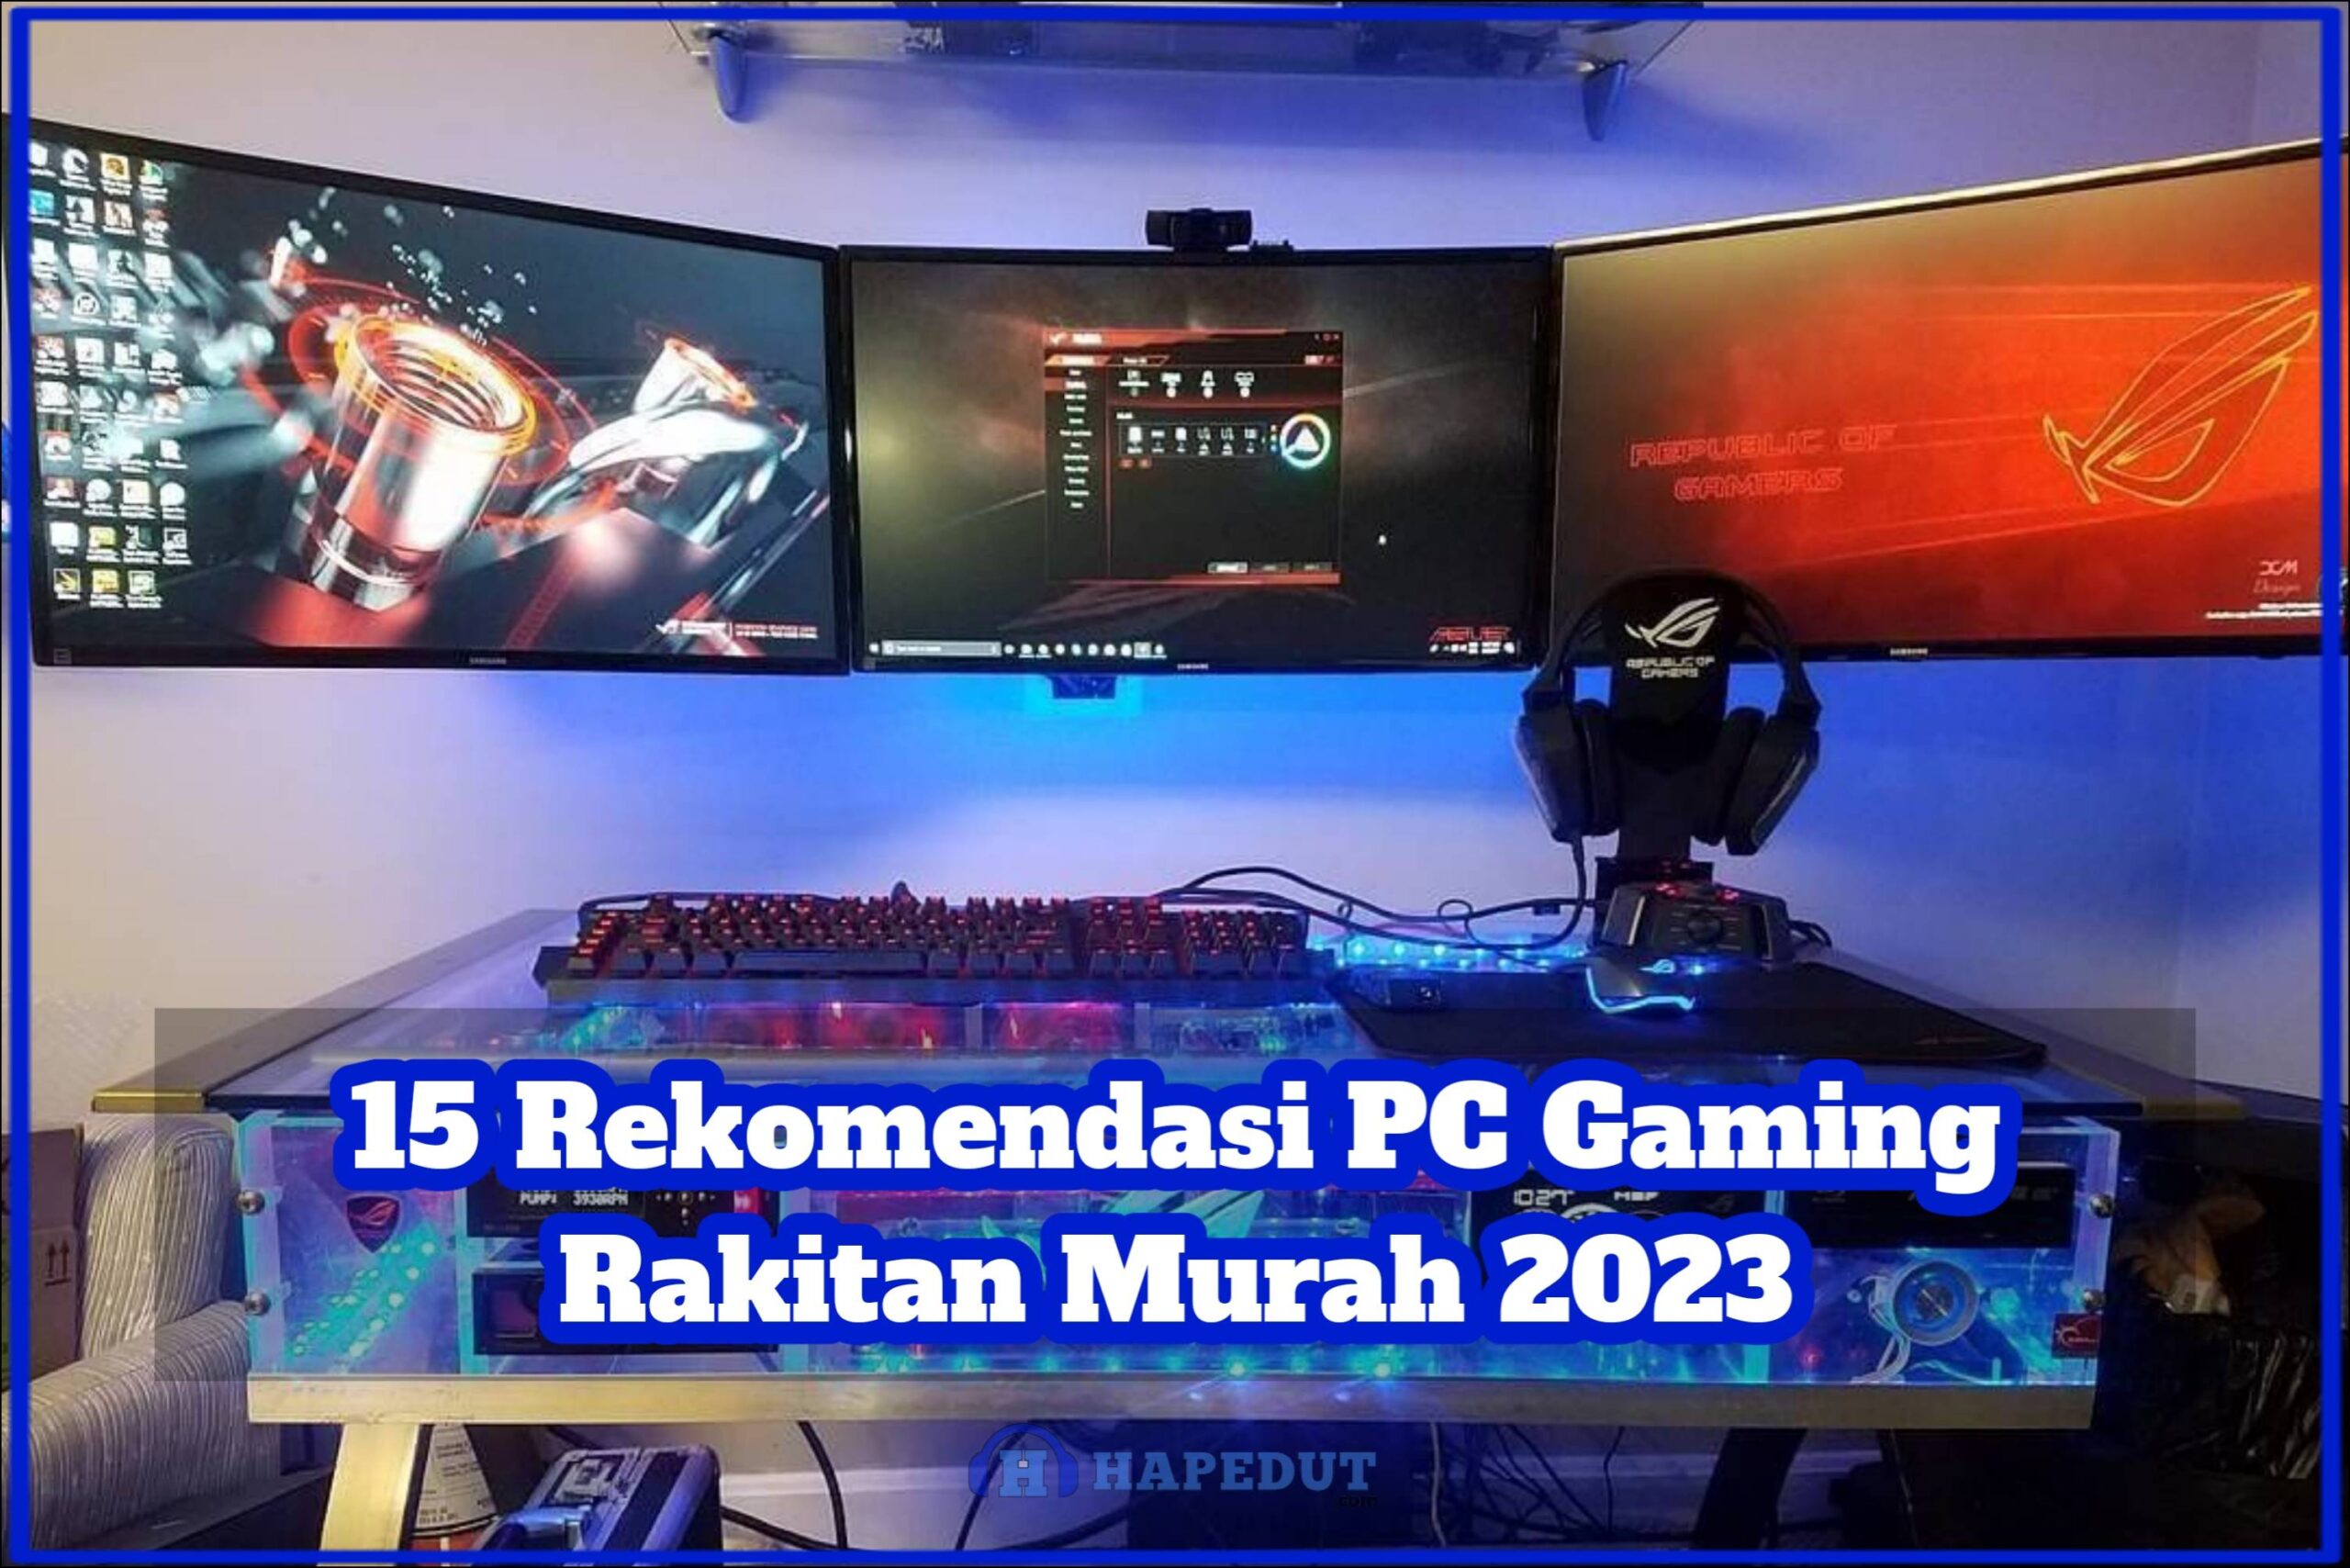 15 Rekomendasi PC Gaming Rakitan Murah 2023